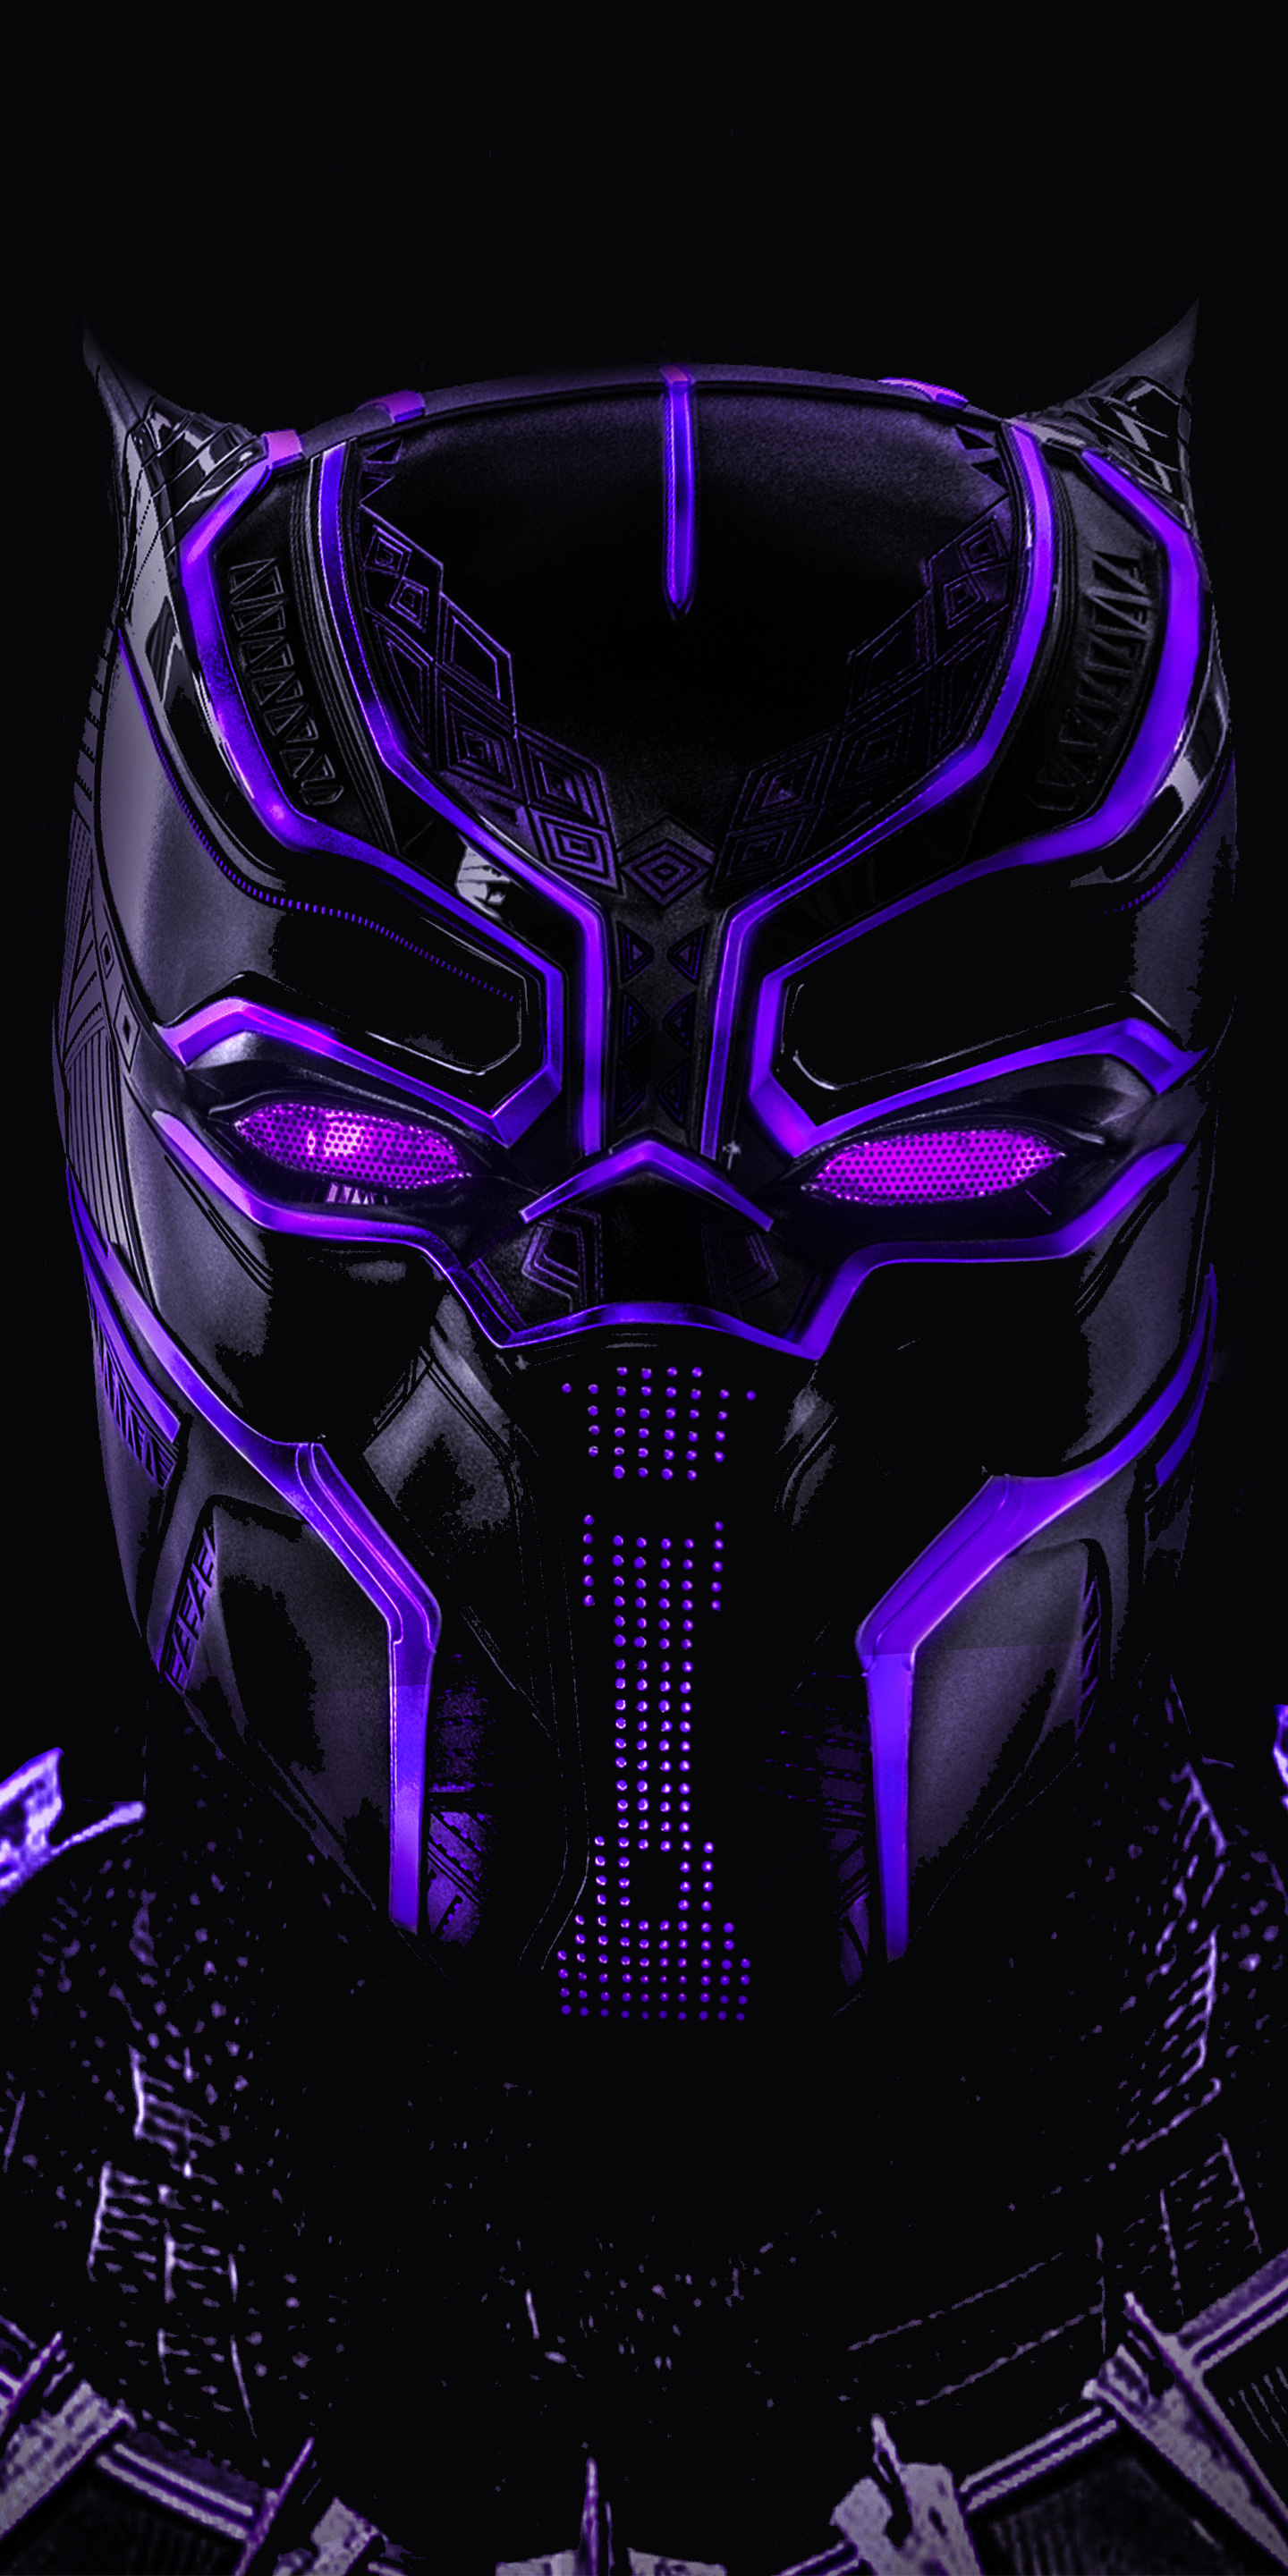  Black  Panther  Superhero Dark  Glowing  Mask Wallpaper  